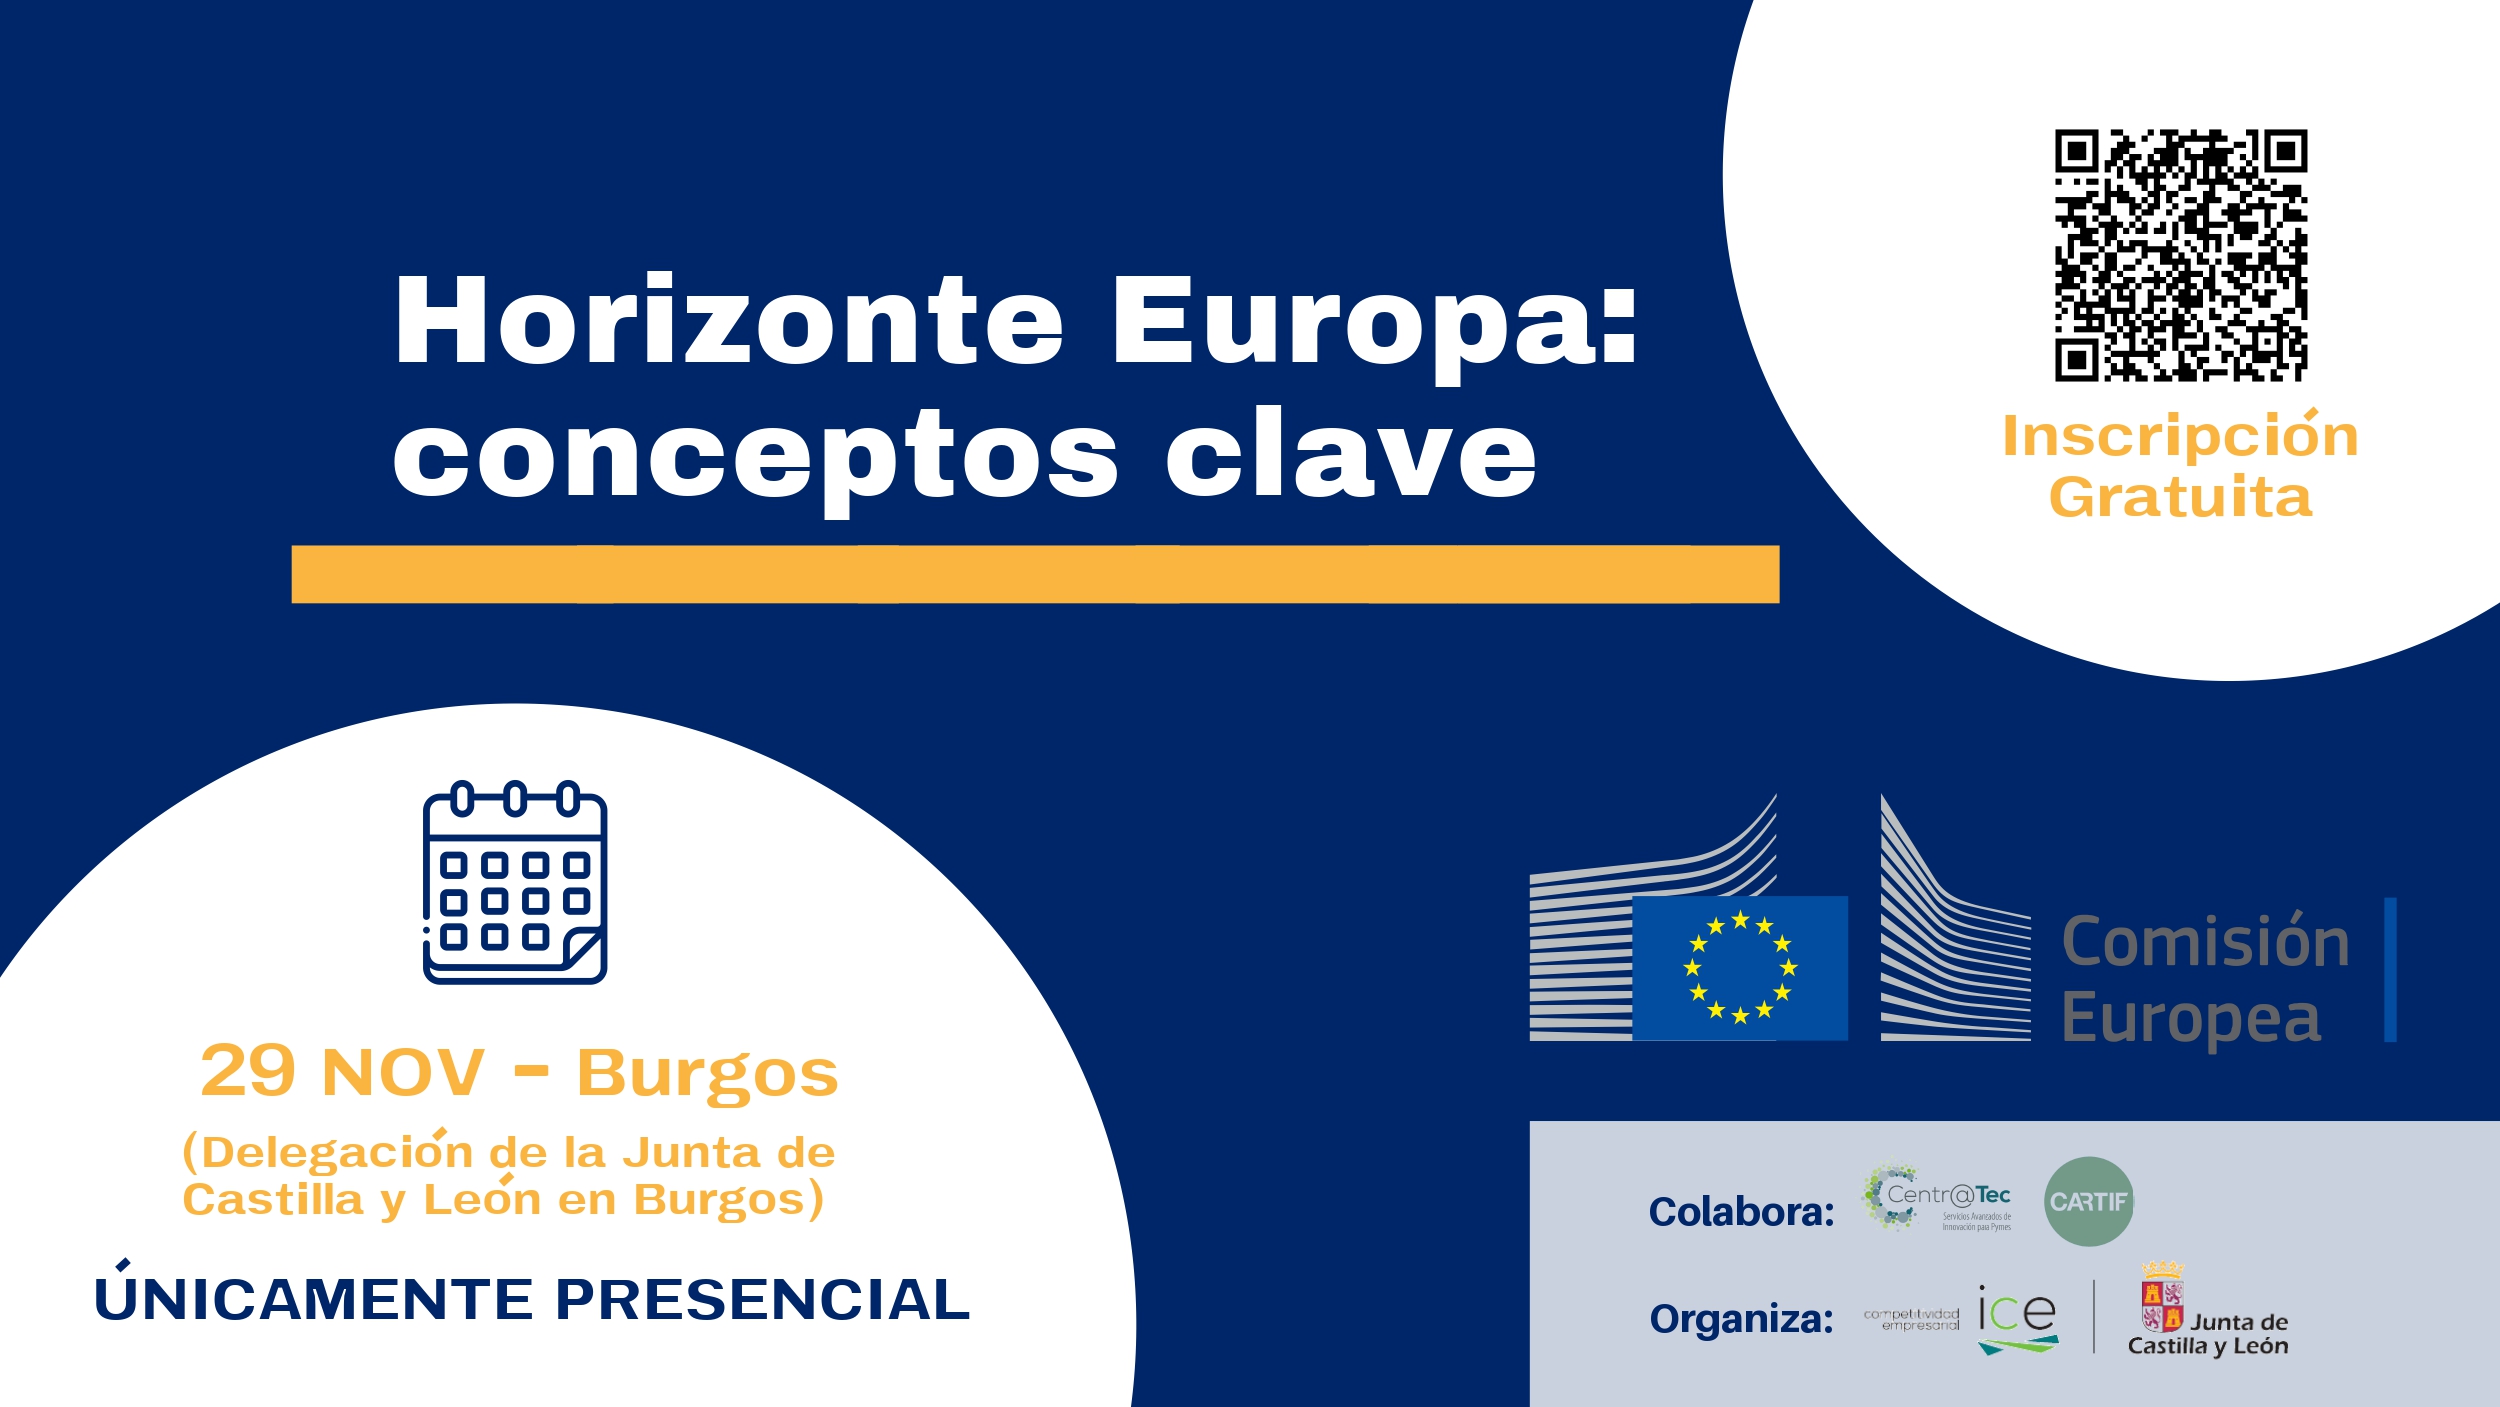 CARTIF organiza mañana una jornada sobre el programa de financiación europea Horizonte Europa en Burgos